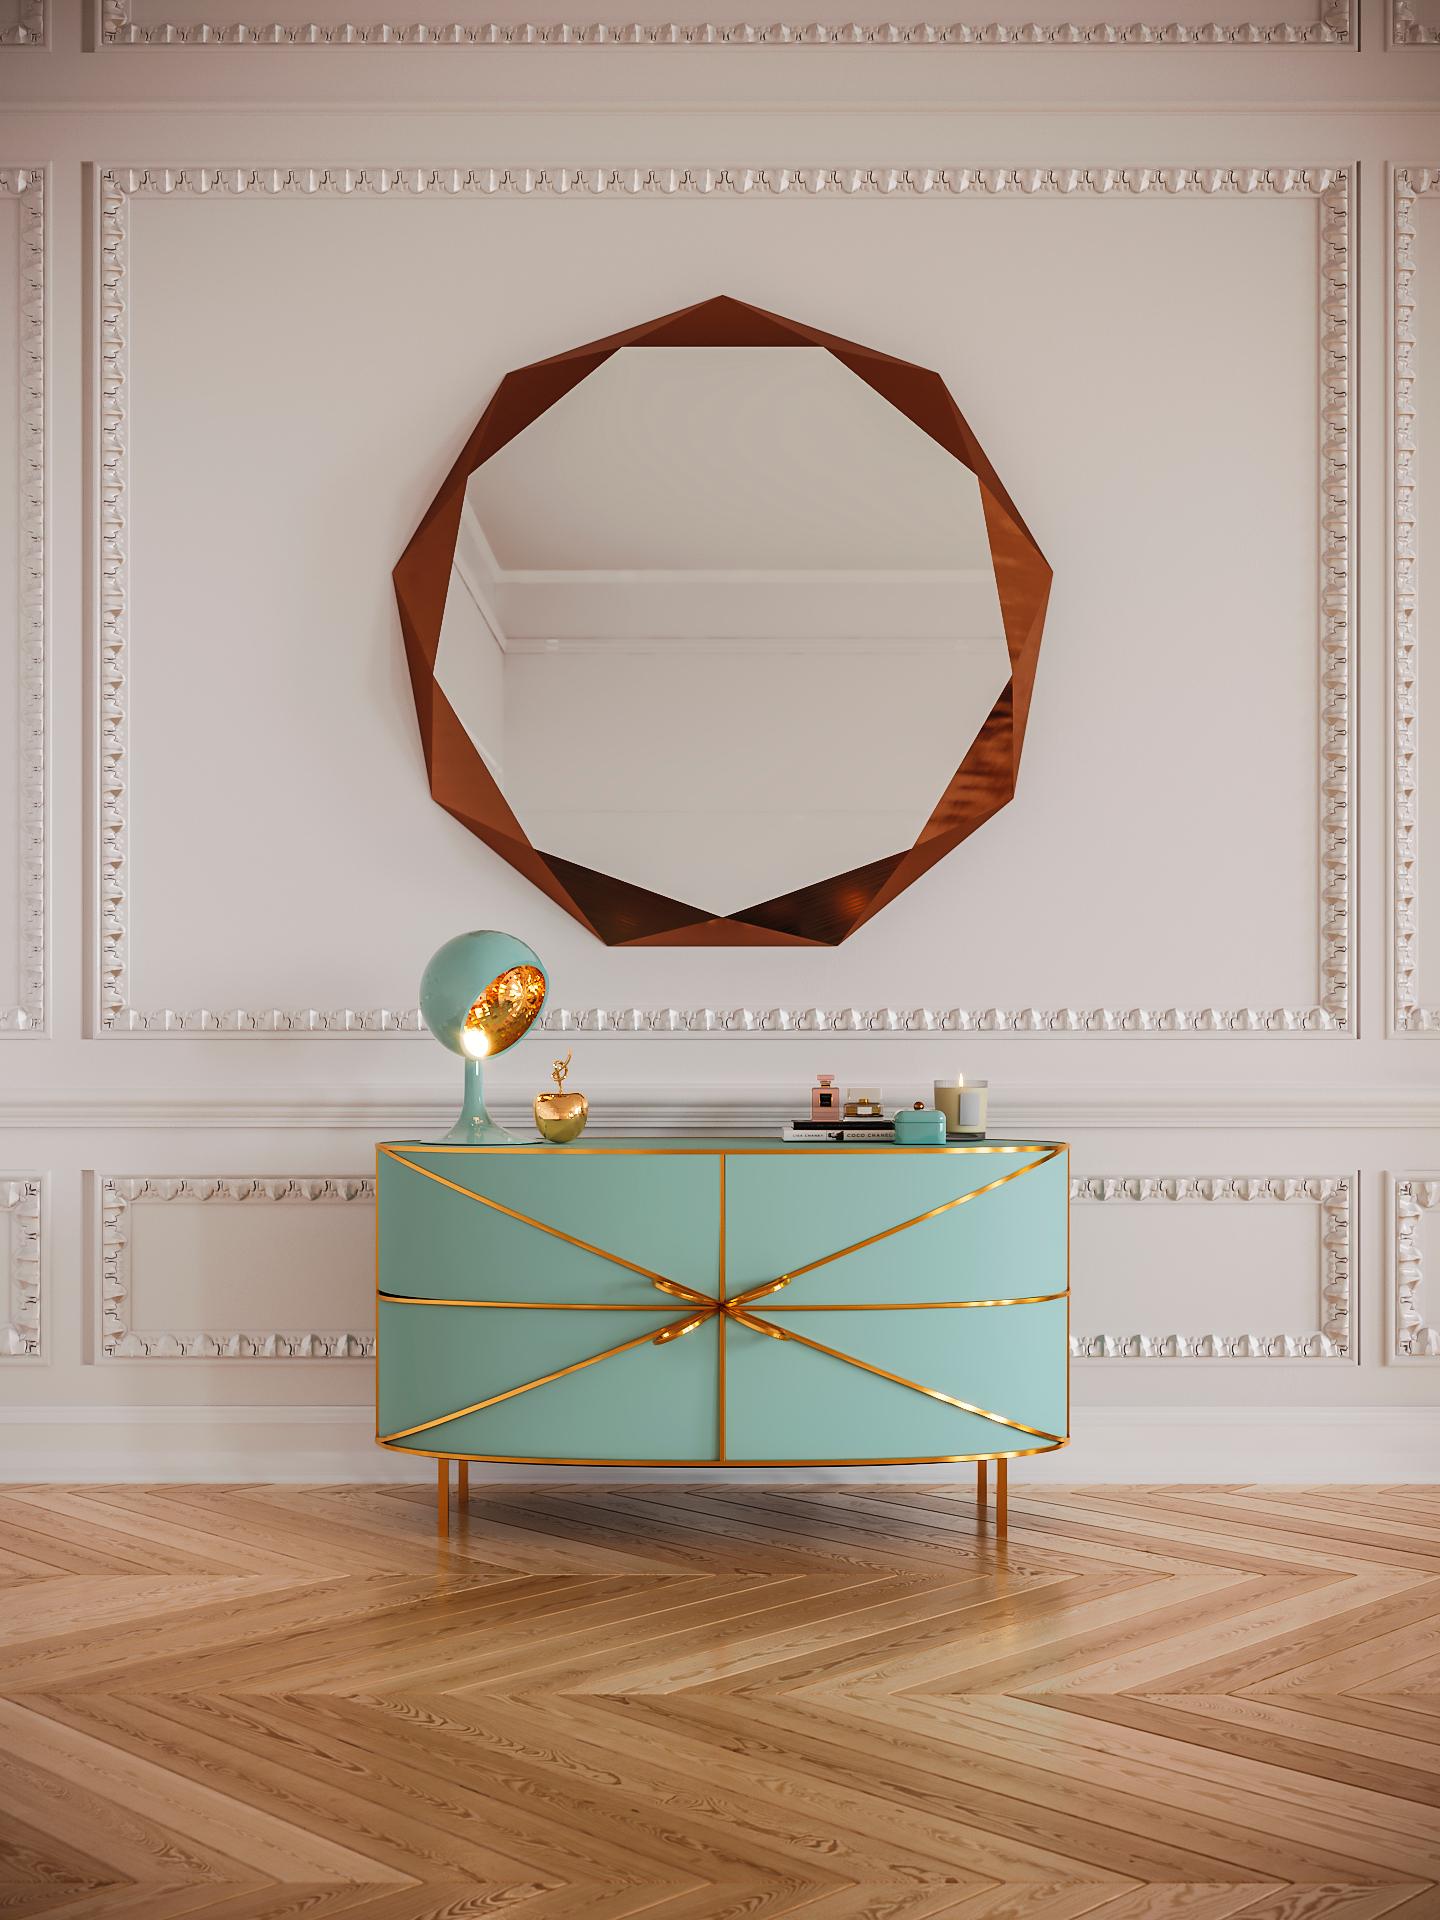 88 Secrets Sideboard Mint Green with Gold Trims de Nika Zupanc est un meuble vert menthe aux lignes sensuelles et féminines avec de luxueuses garnitures métalliques en or. Une pièce maîtresse dans tout espace intérieur !

Nika Zupanc, designer